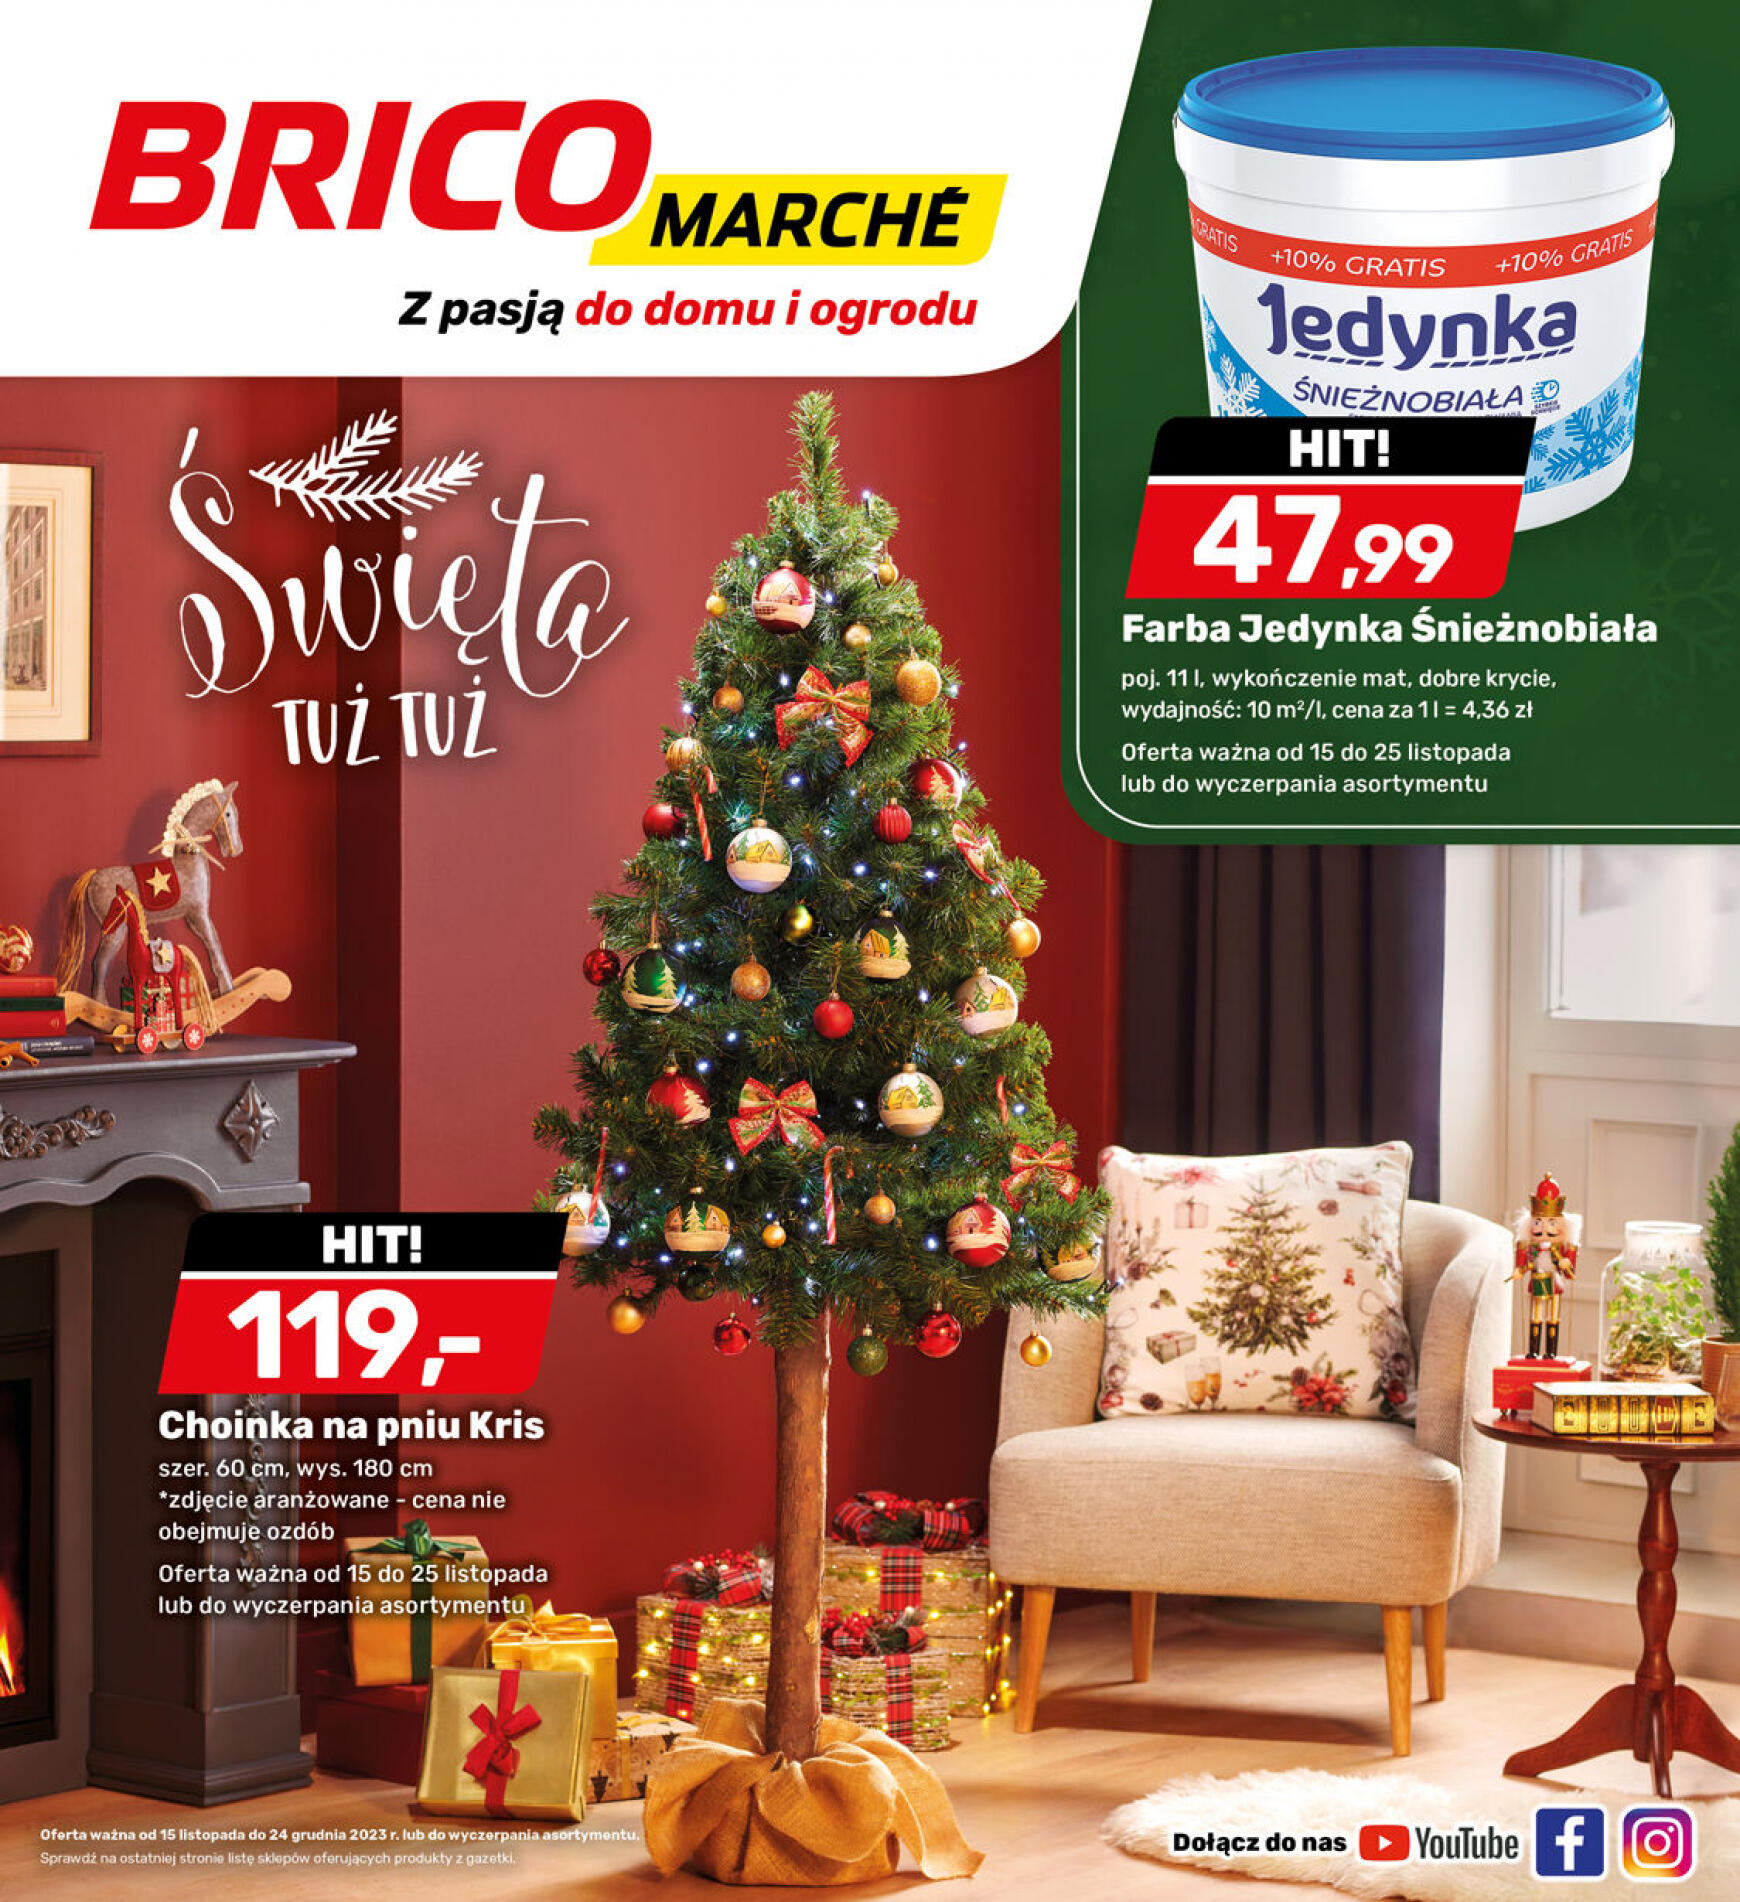 brico-marche - - Bricomarche - page: 8